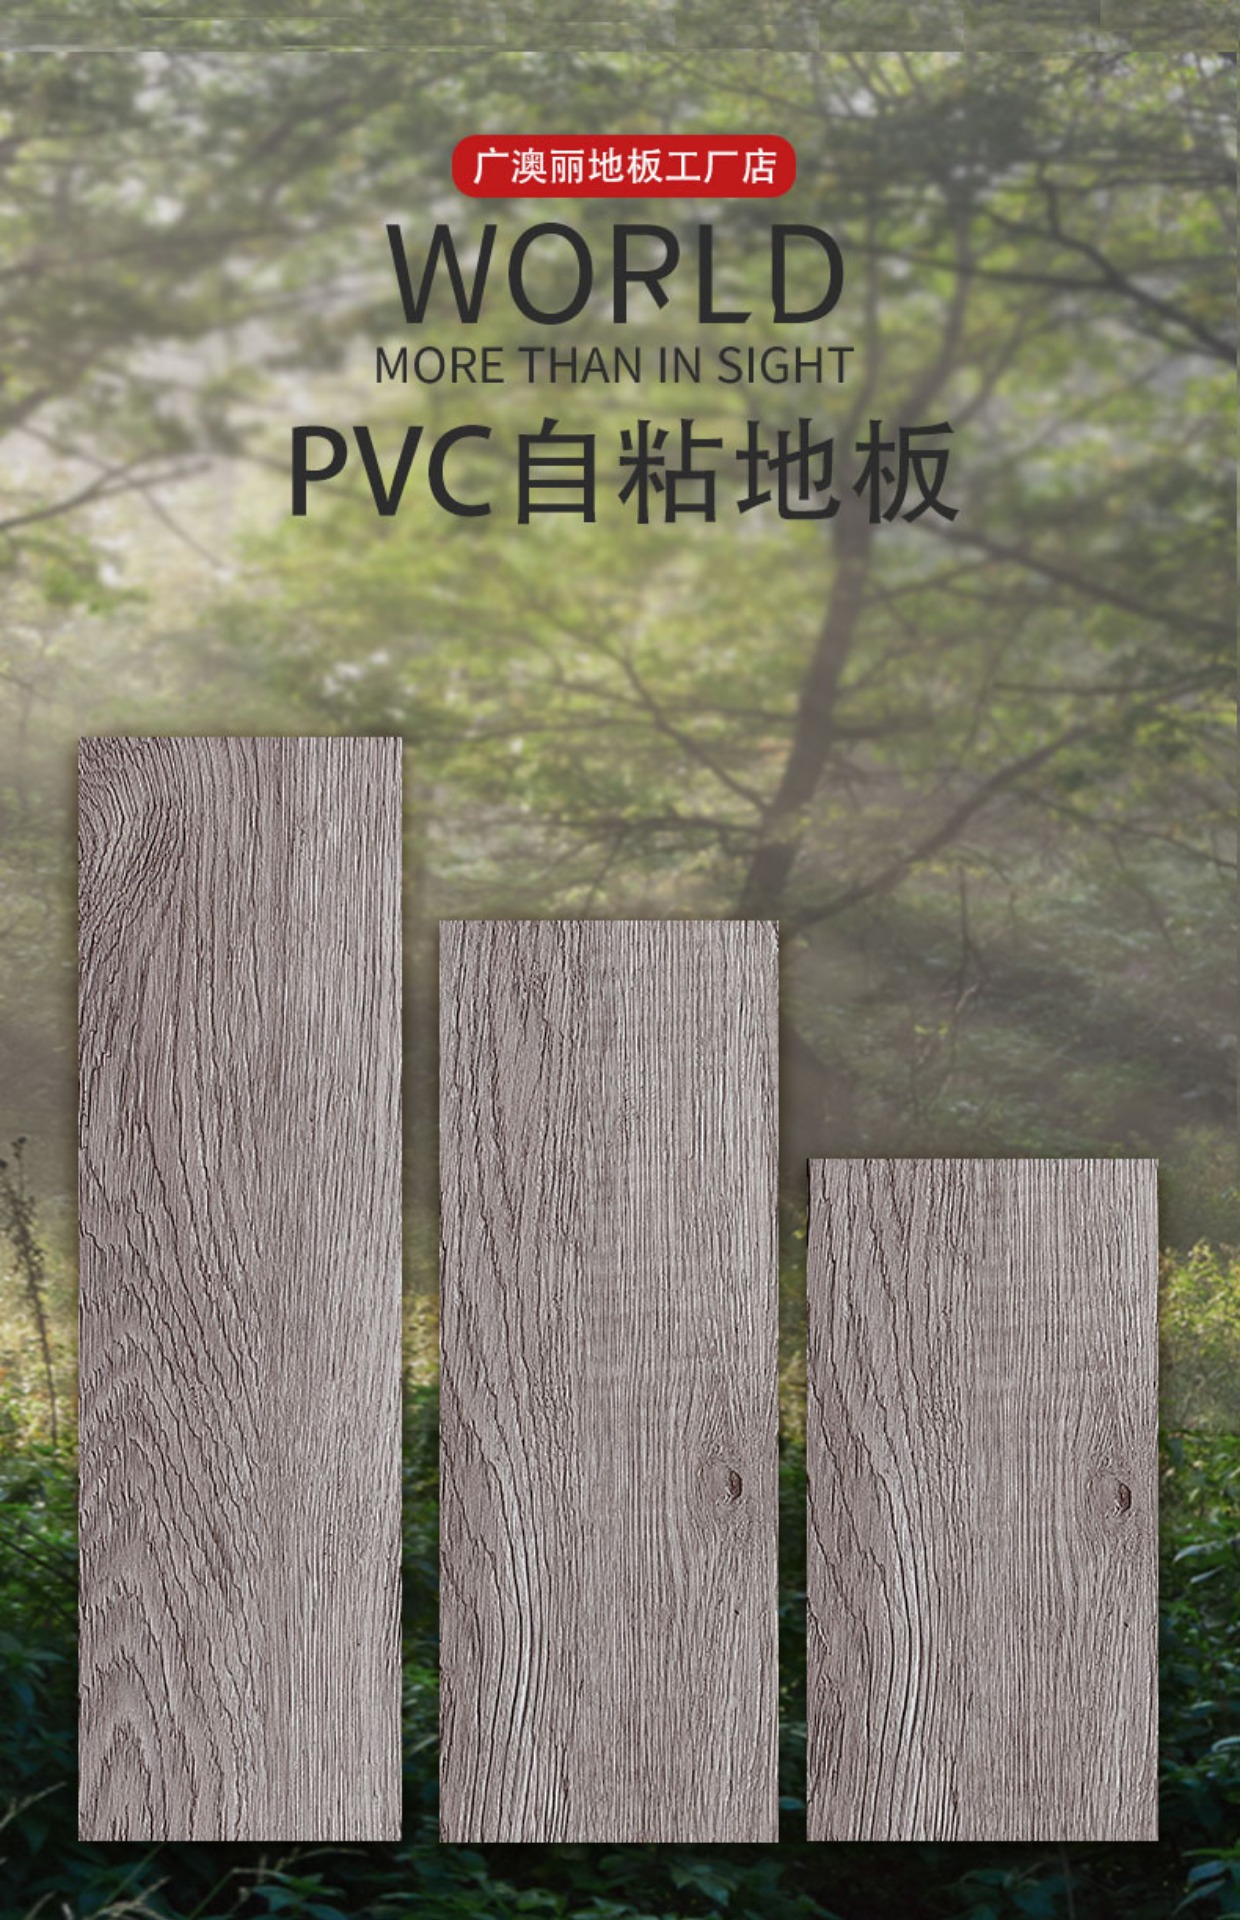 pvc石塑地板贴自粘地板革家用木纹防水耐磨地胶水泥地自己铺热卖g03厚